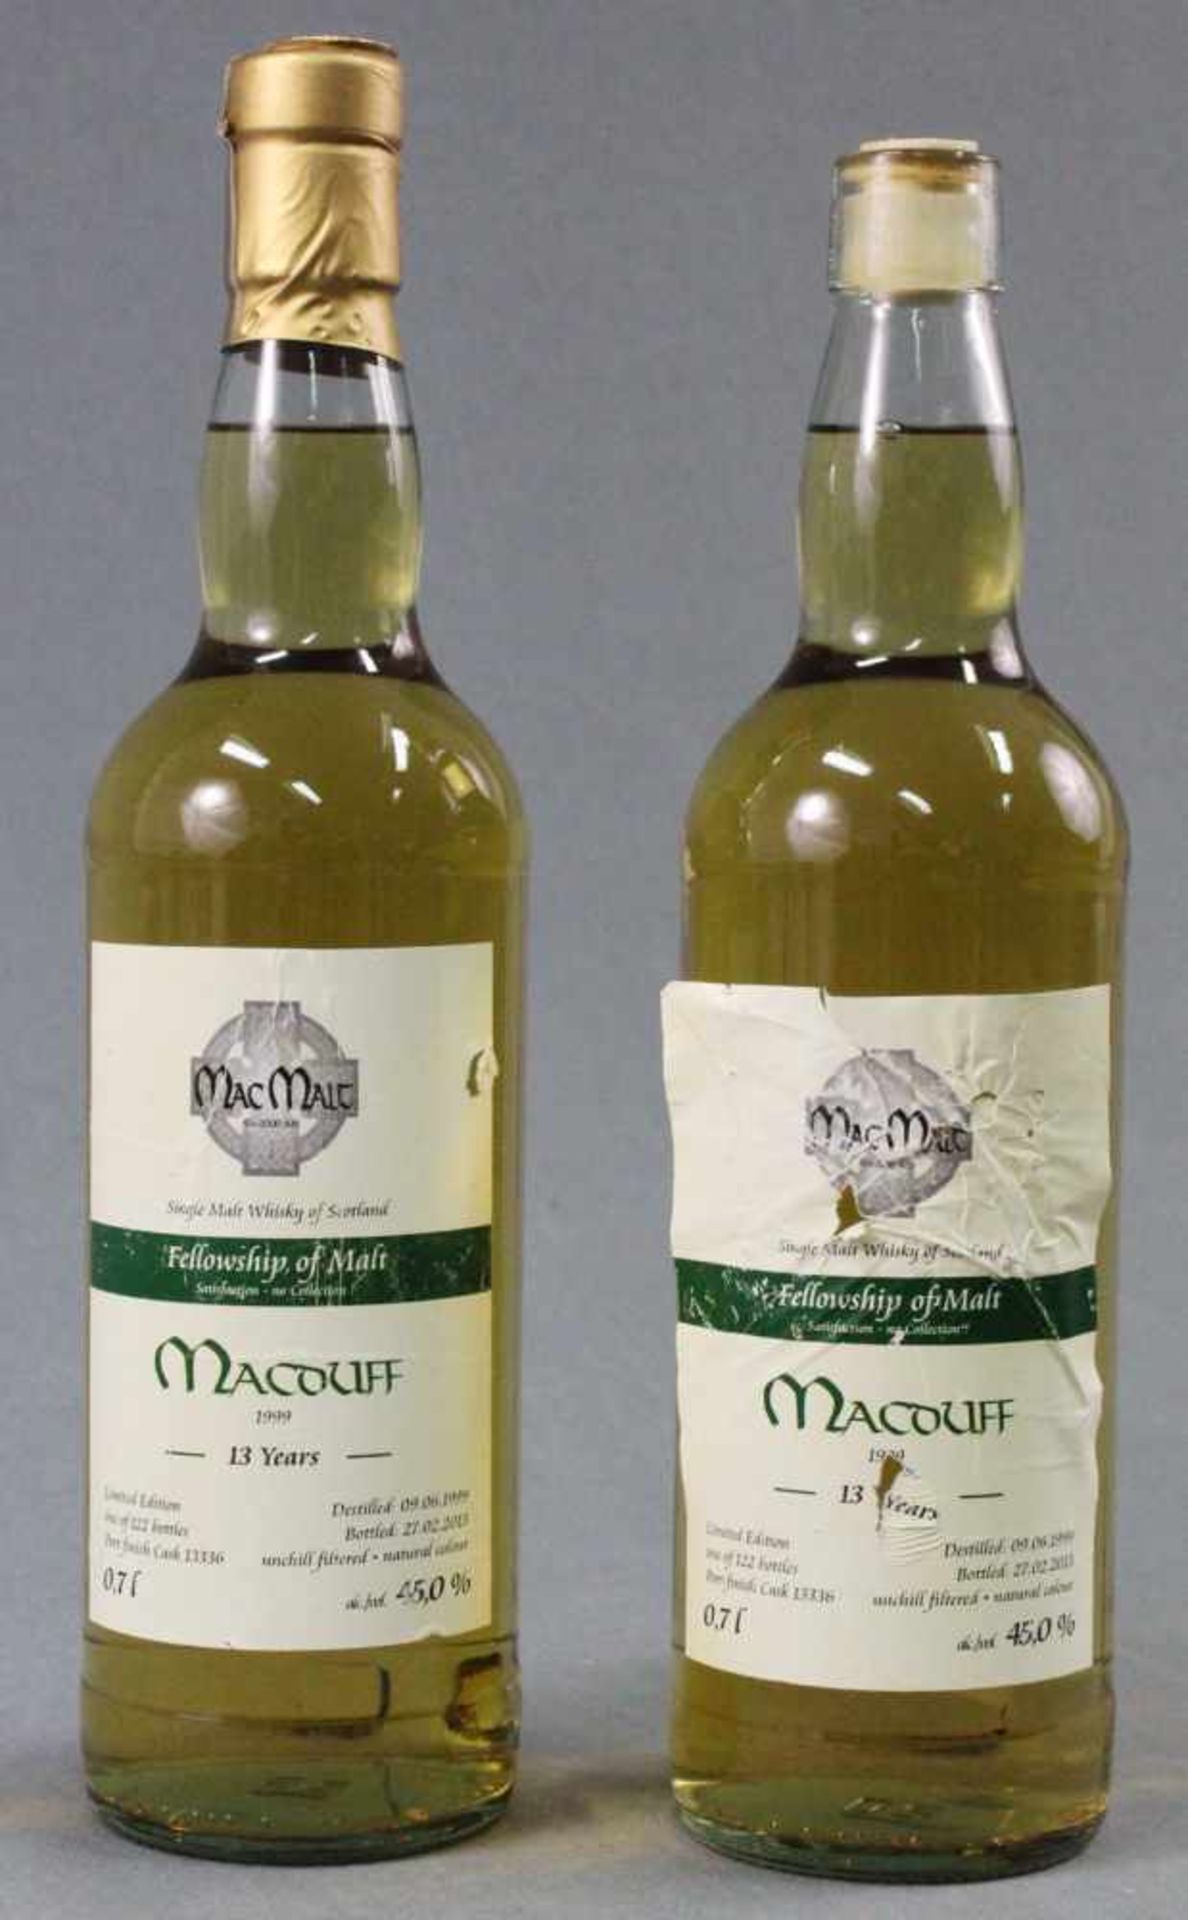 1999 Macouff Single Malt Whisky of Scotland. 13 years. Distilled 1999, Bottled 2013.MacMalt Esc.